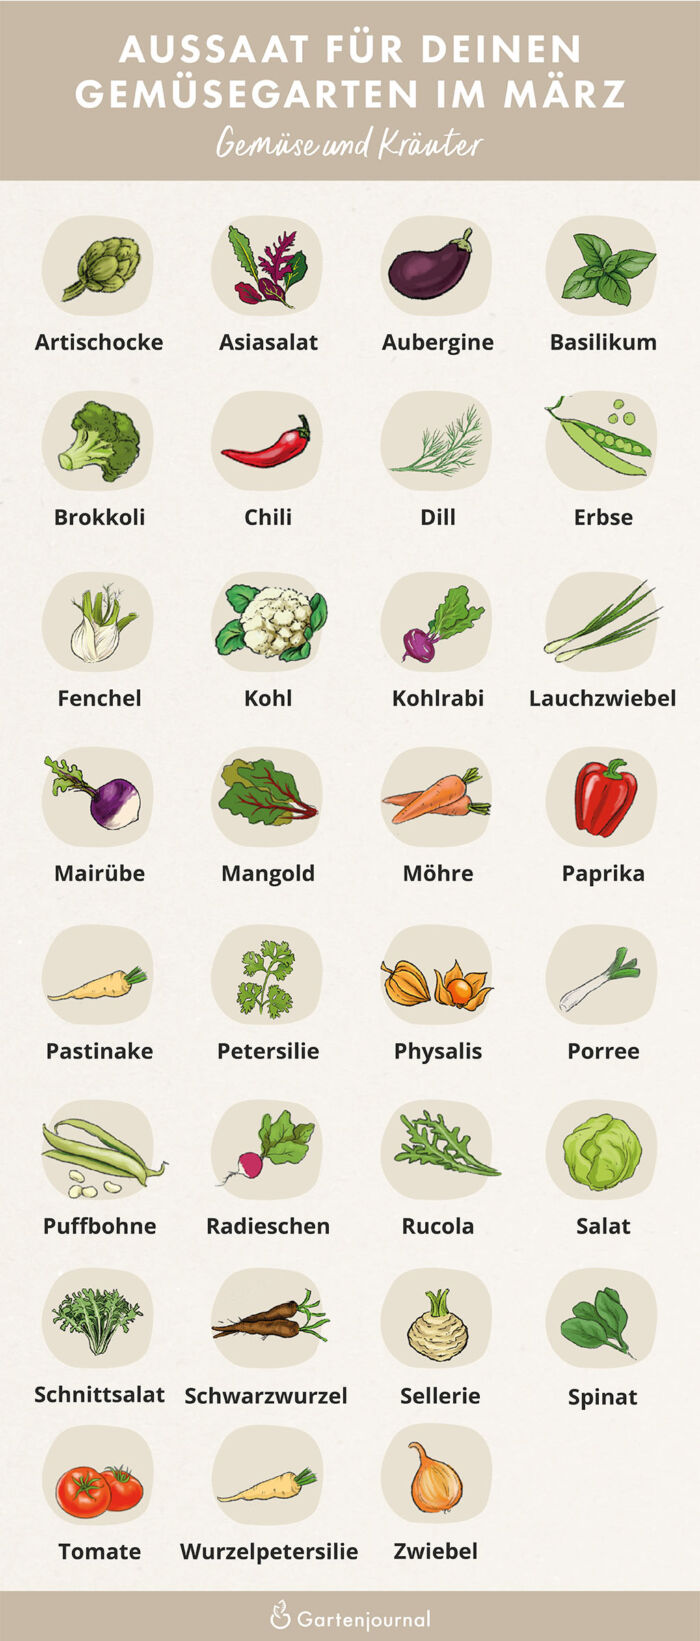 Illustratierter Gartenkalender der zeigt, welche Gemüse und Kräuter im Märzausgesät werden